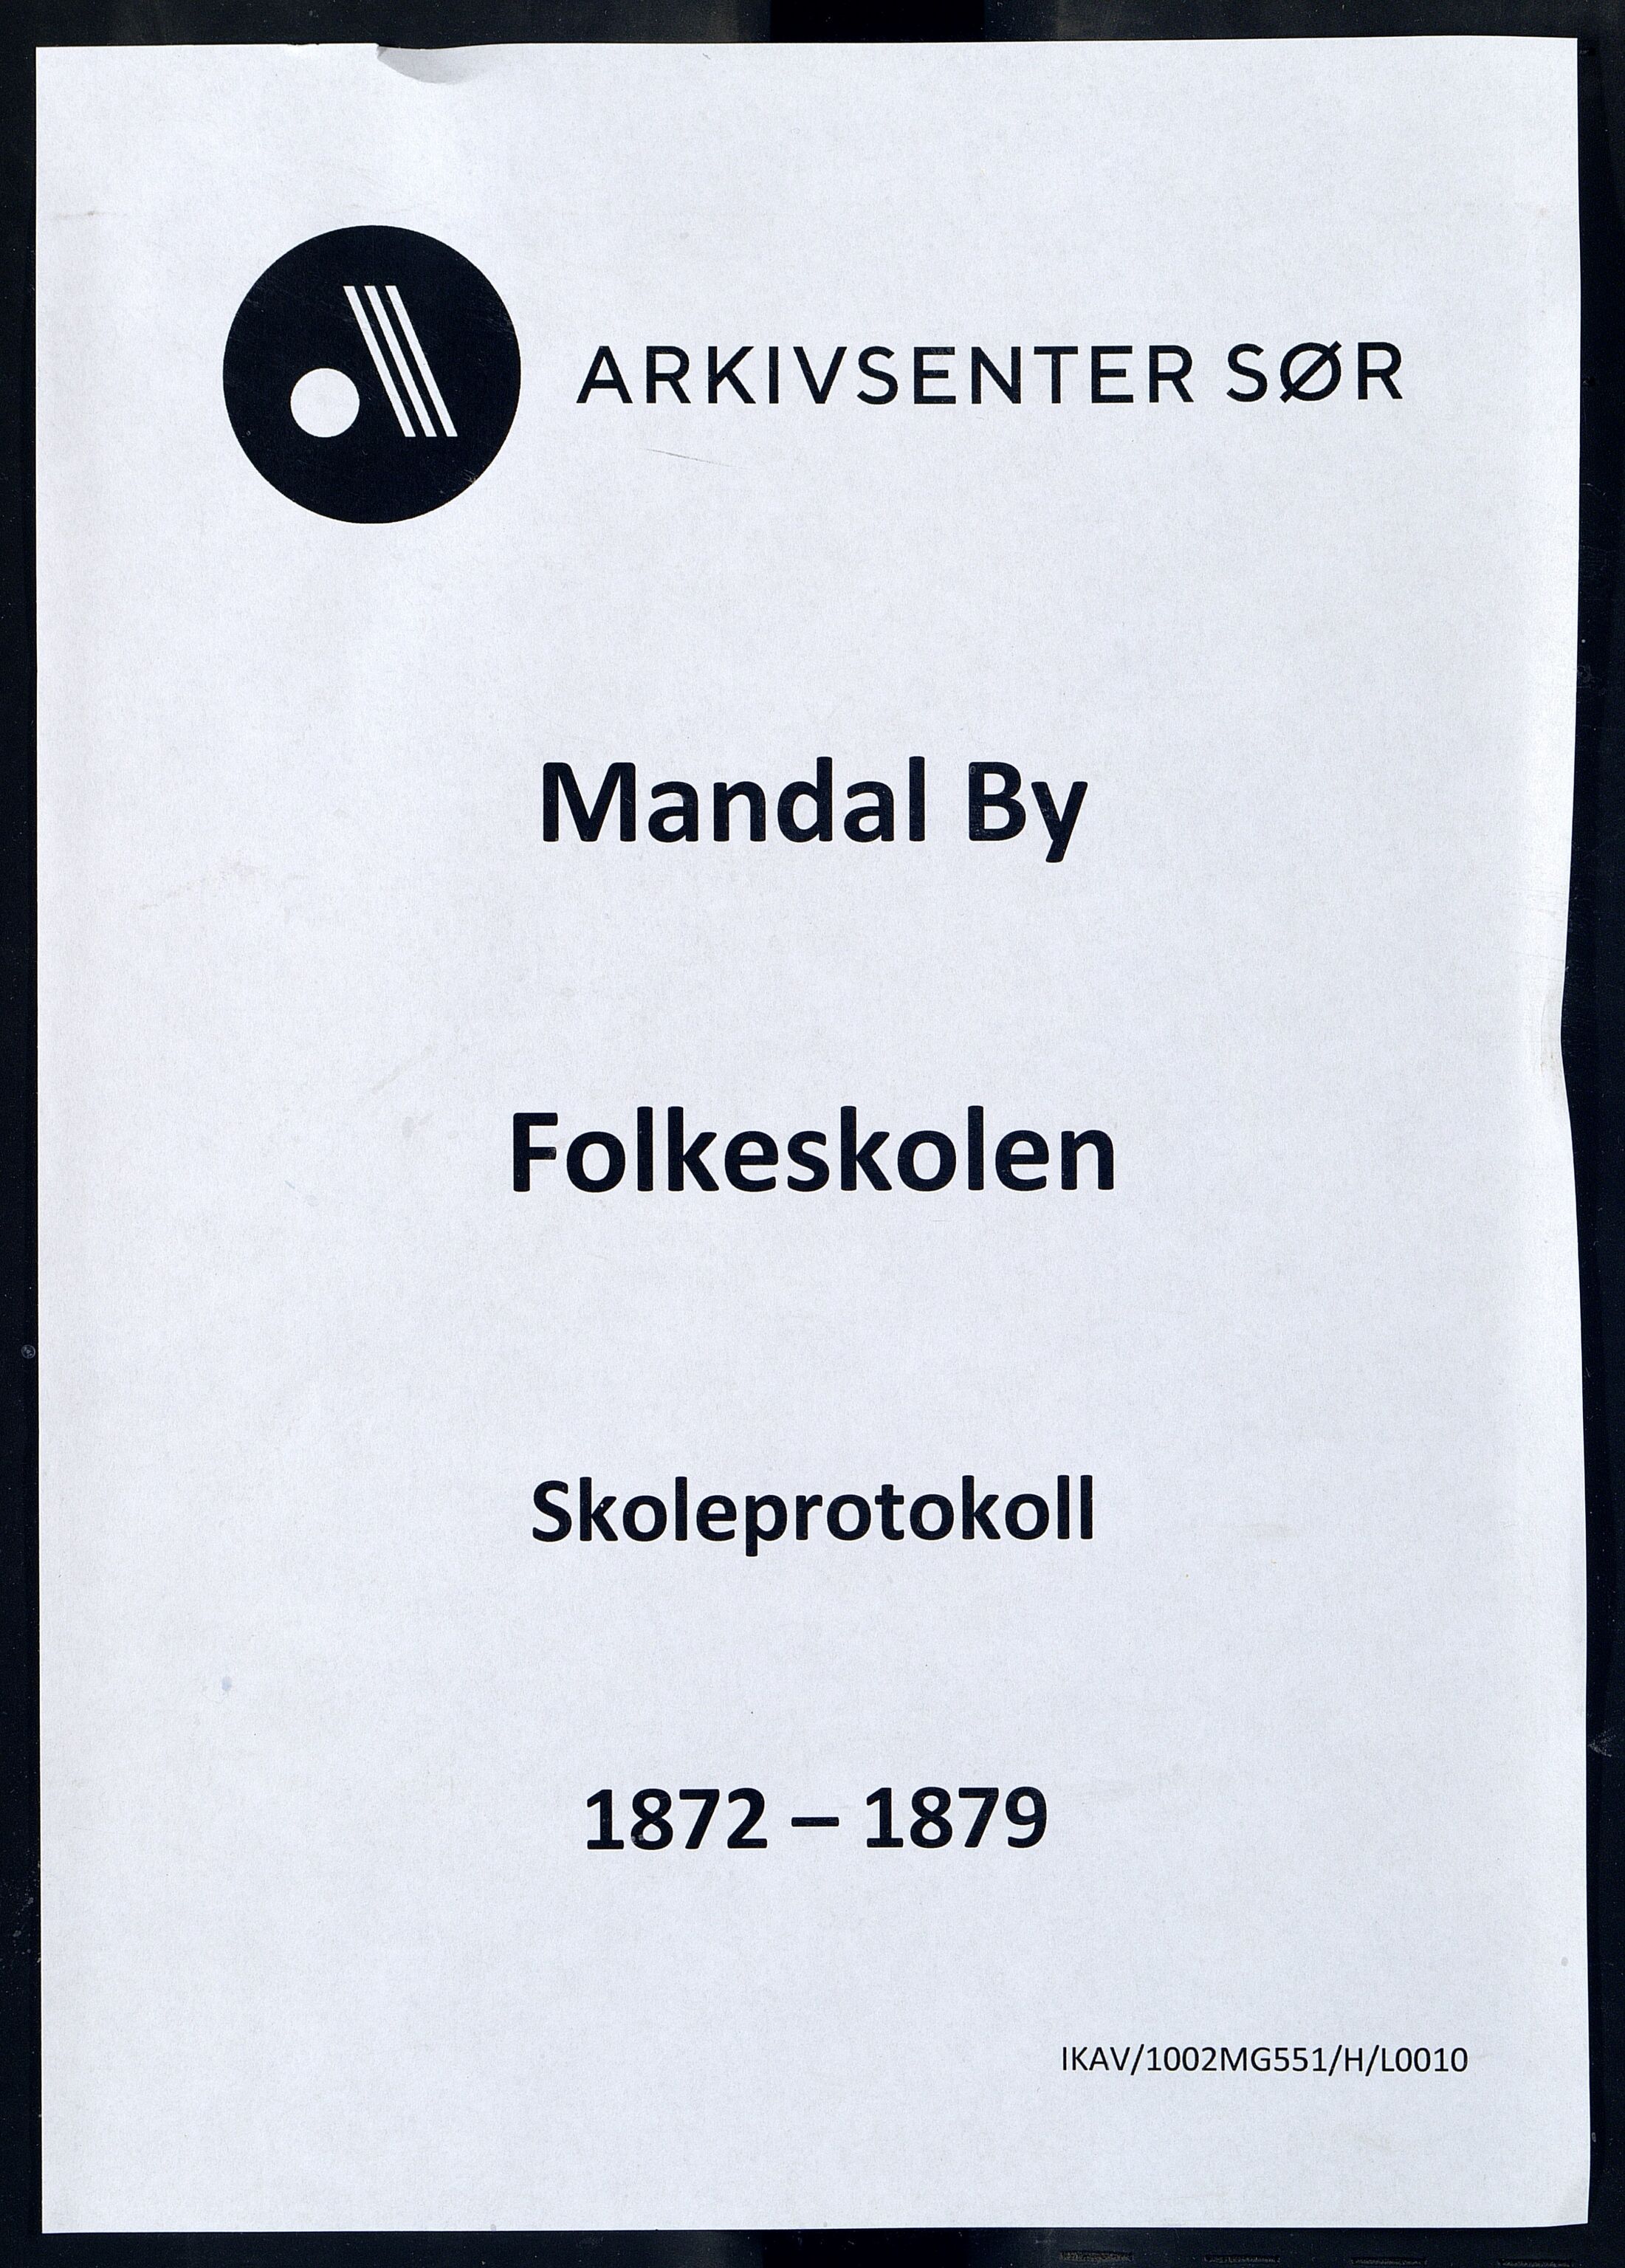 Mandal By - Mandal Allmueskole/Folkeskole/Skole, IKAV/1002MG551/H/L0010: Skoleprotokoll, 1872-1879